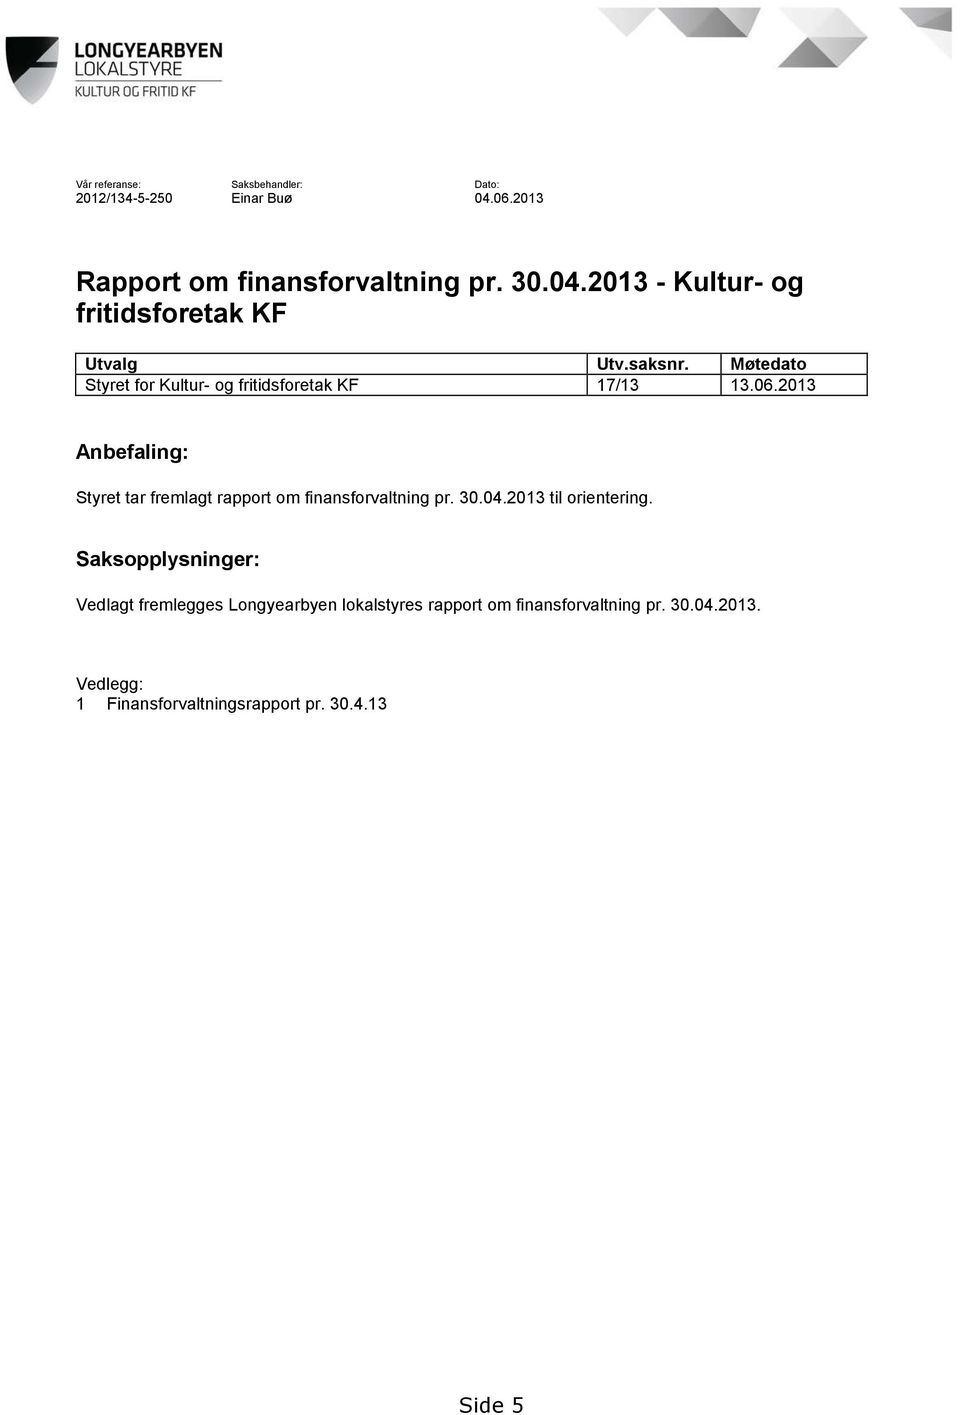 2013 Anbefaling: Styret tar fremlagt rapport om finansforvaltning pr. 30.04.2013 til orientering.